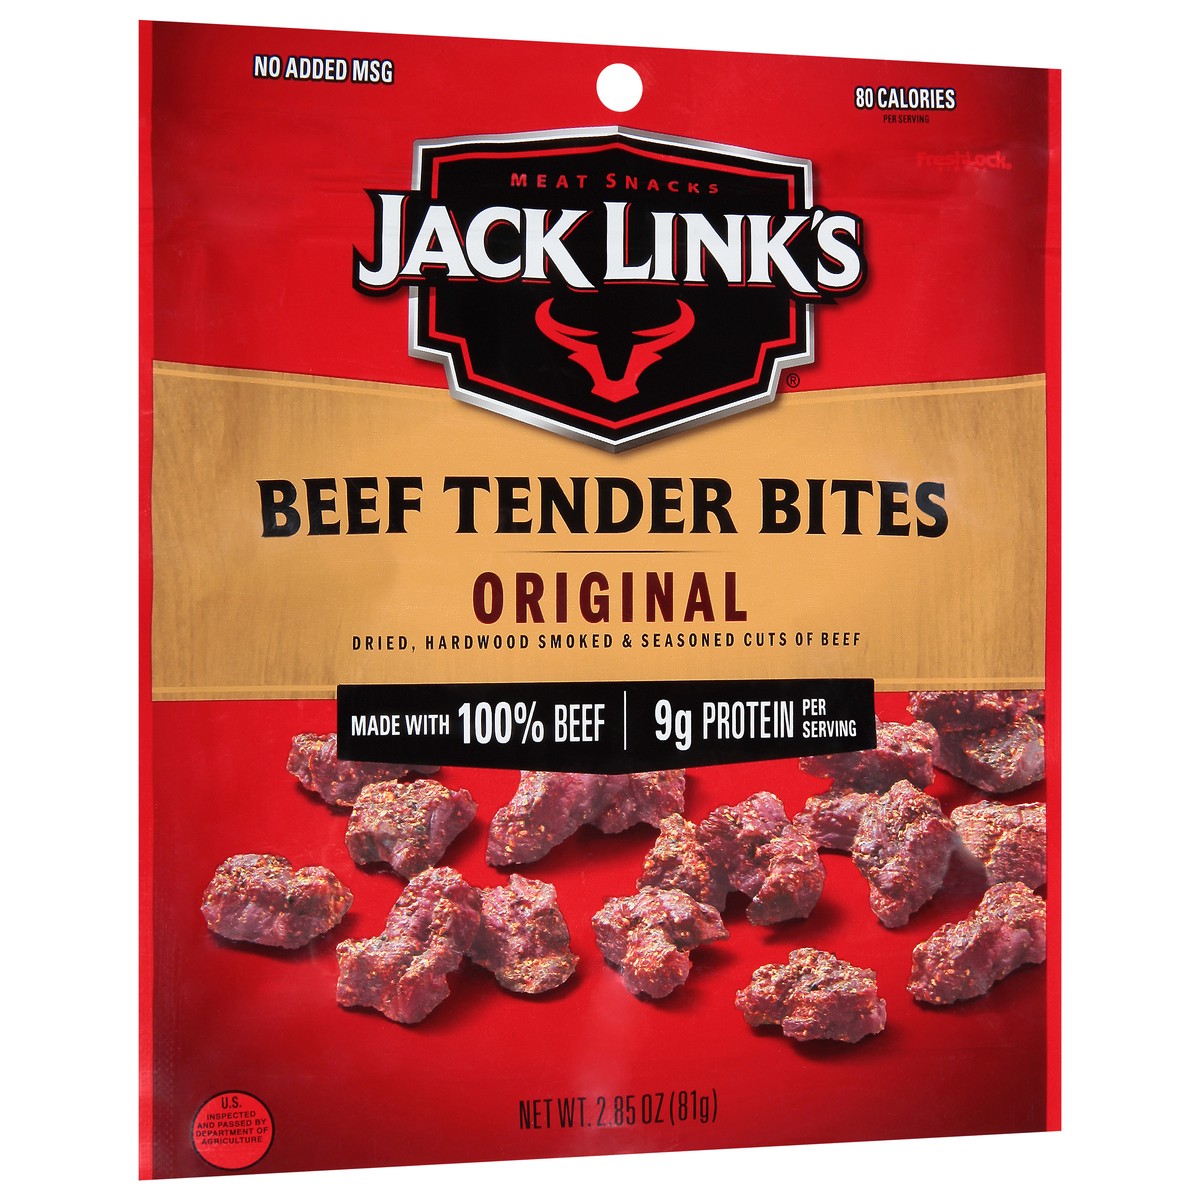 slide 2 of 9, Jack Link's Jack Links Meat Snacks Tender Bites Original Beef Steak - 2.85 Oz, 2.85 oz